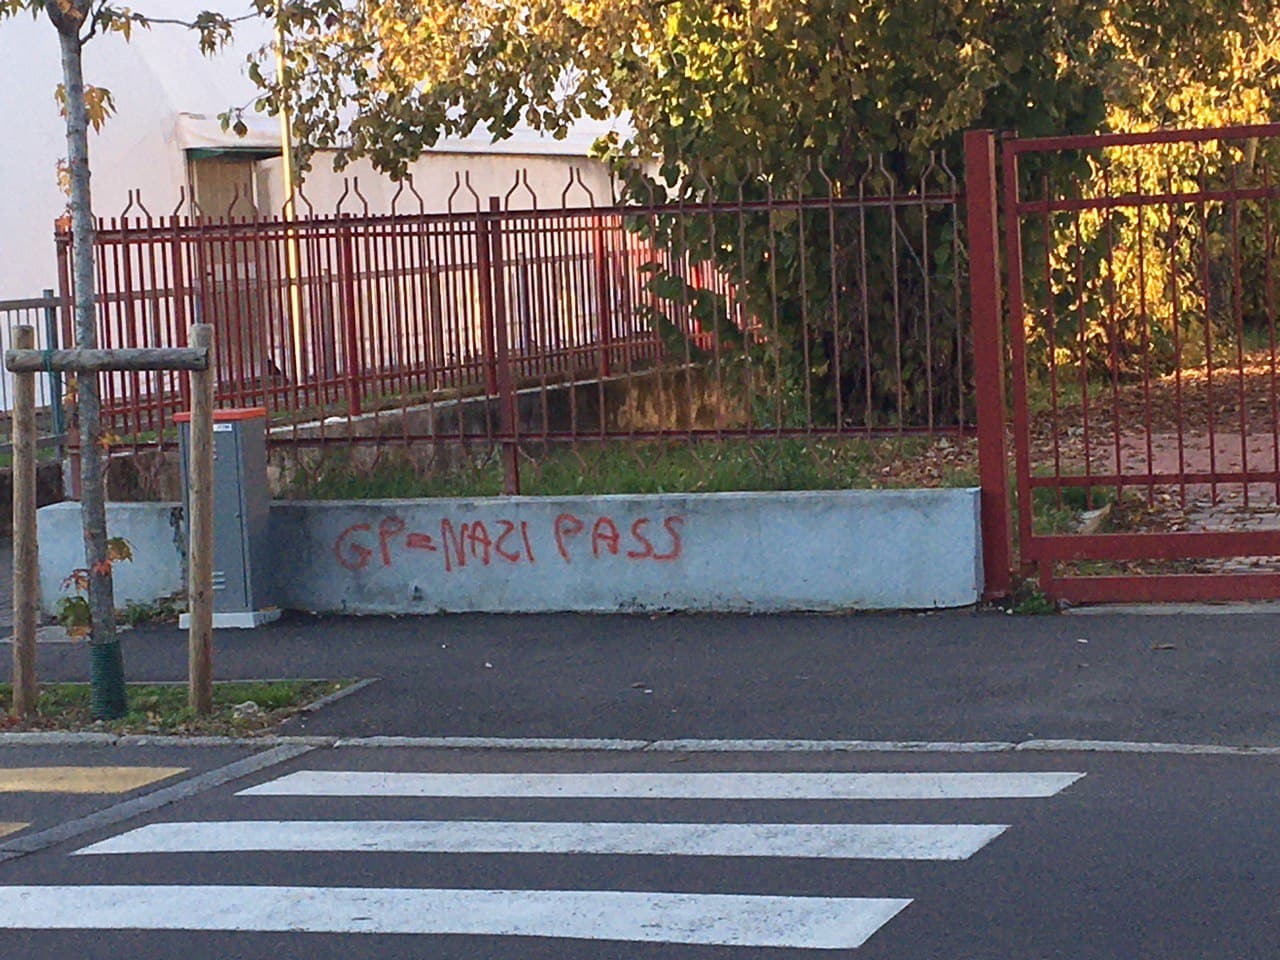 A Solaro graffiti no vax sulla recinzione della scuola media